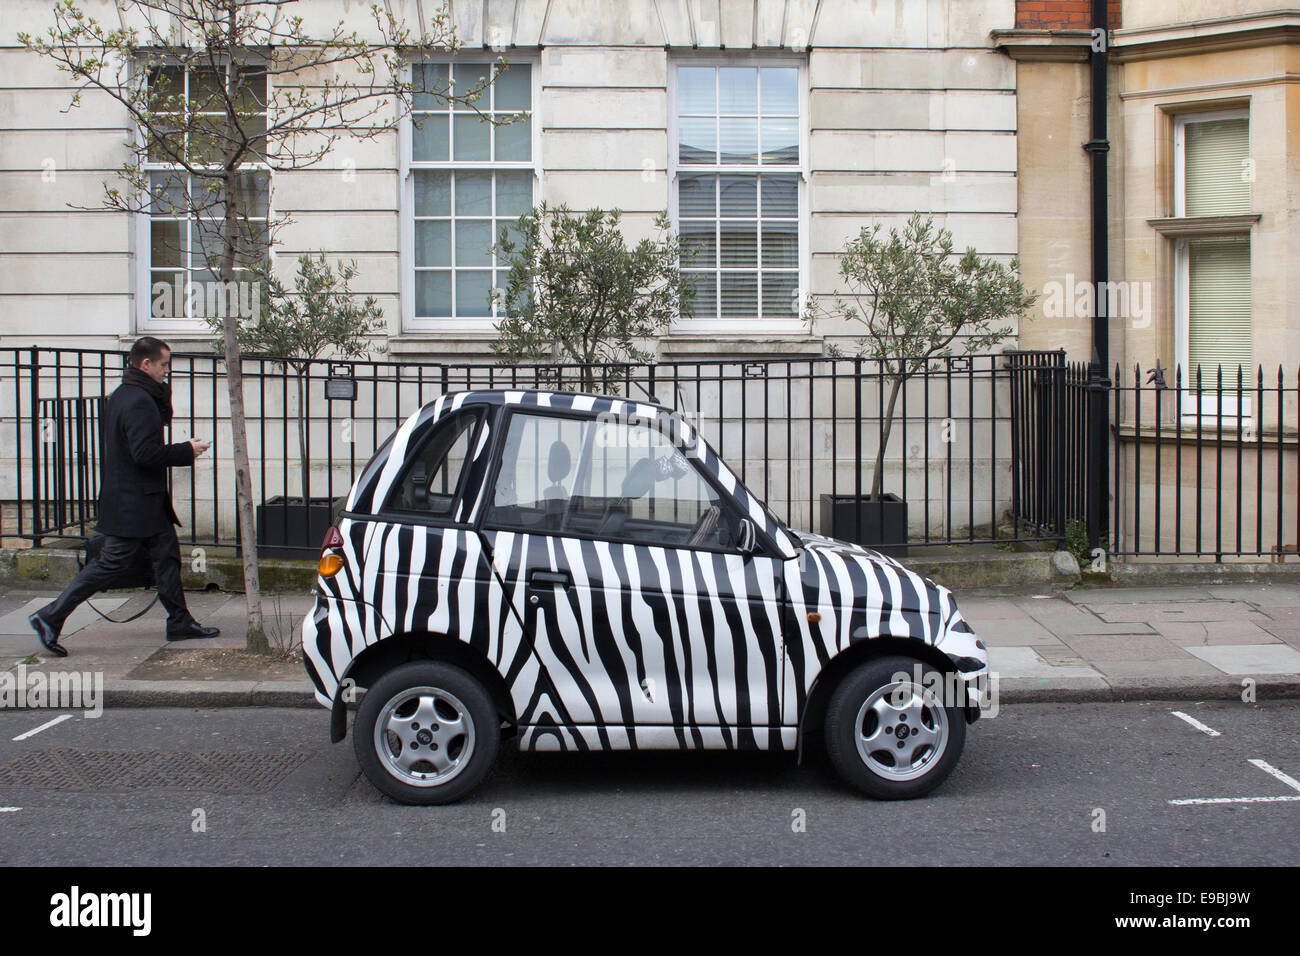 ein-kleines-auto-lackiert-in-zebra-farben-mit-einem-mann-zu-fuss-auf-einer-londoner-strasse-ge...jpg